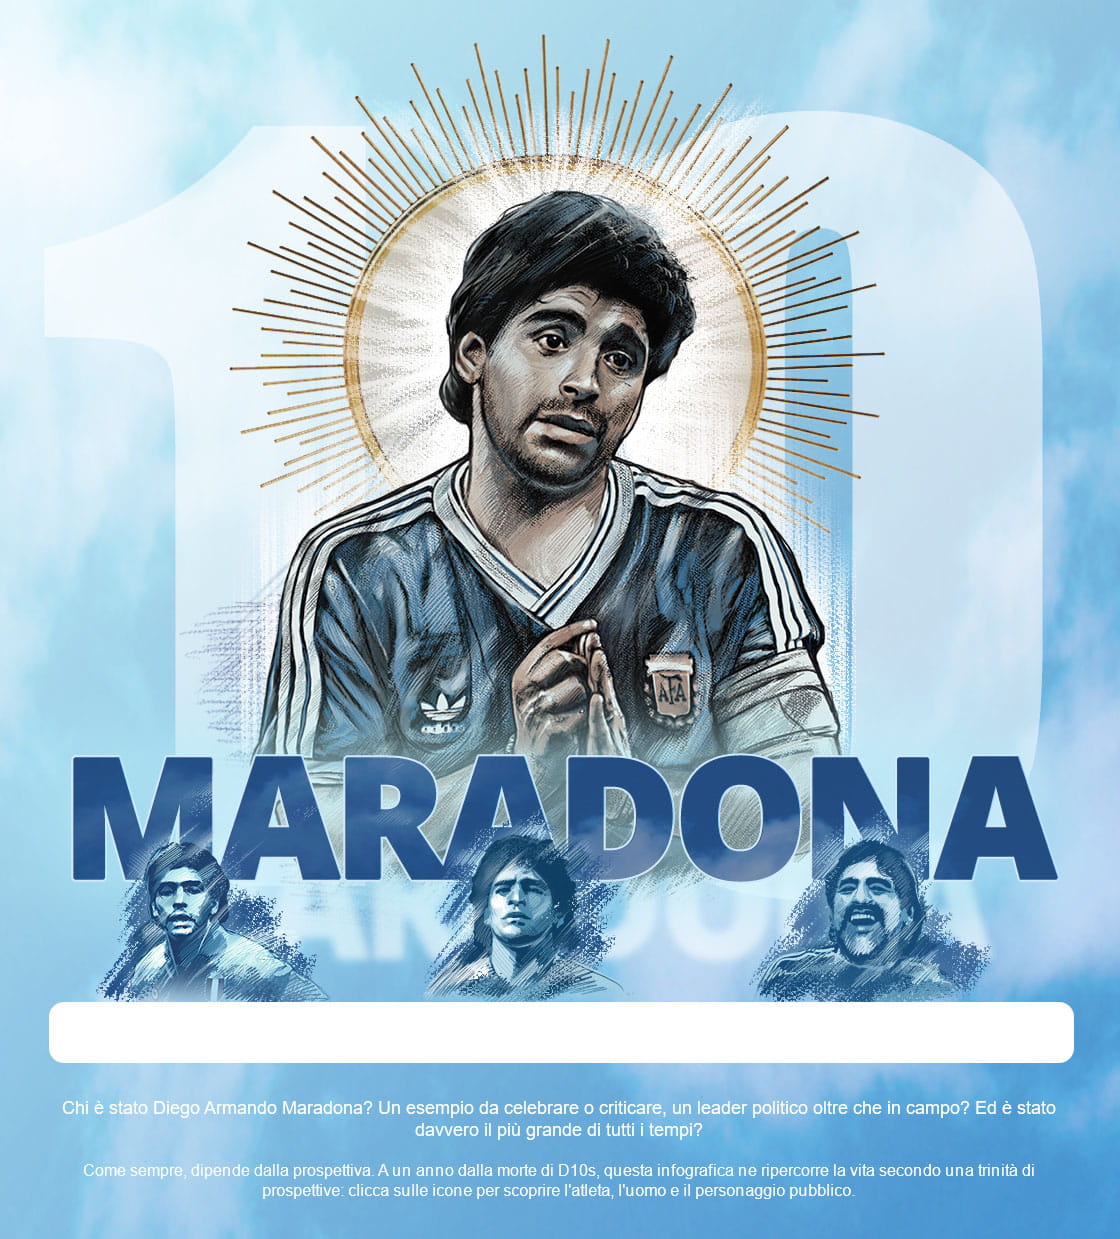 Infografica sulla vita di Diego Armando Maradona, ricostruita secondo la prospettiva dell'atleta, l'uomo e il personaggio pubblico.